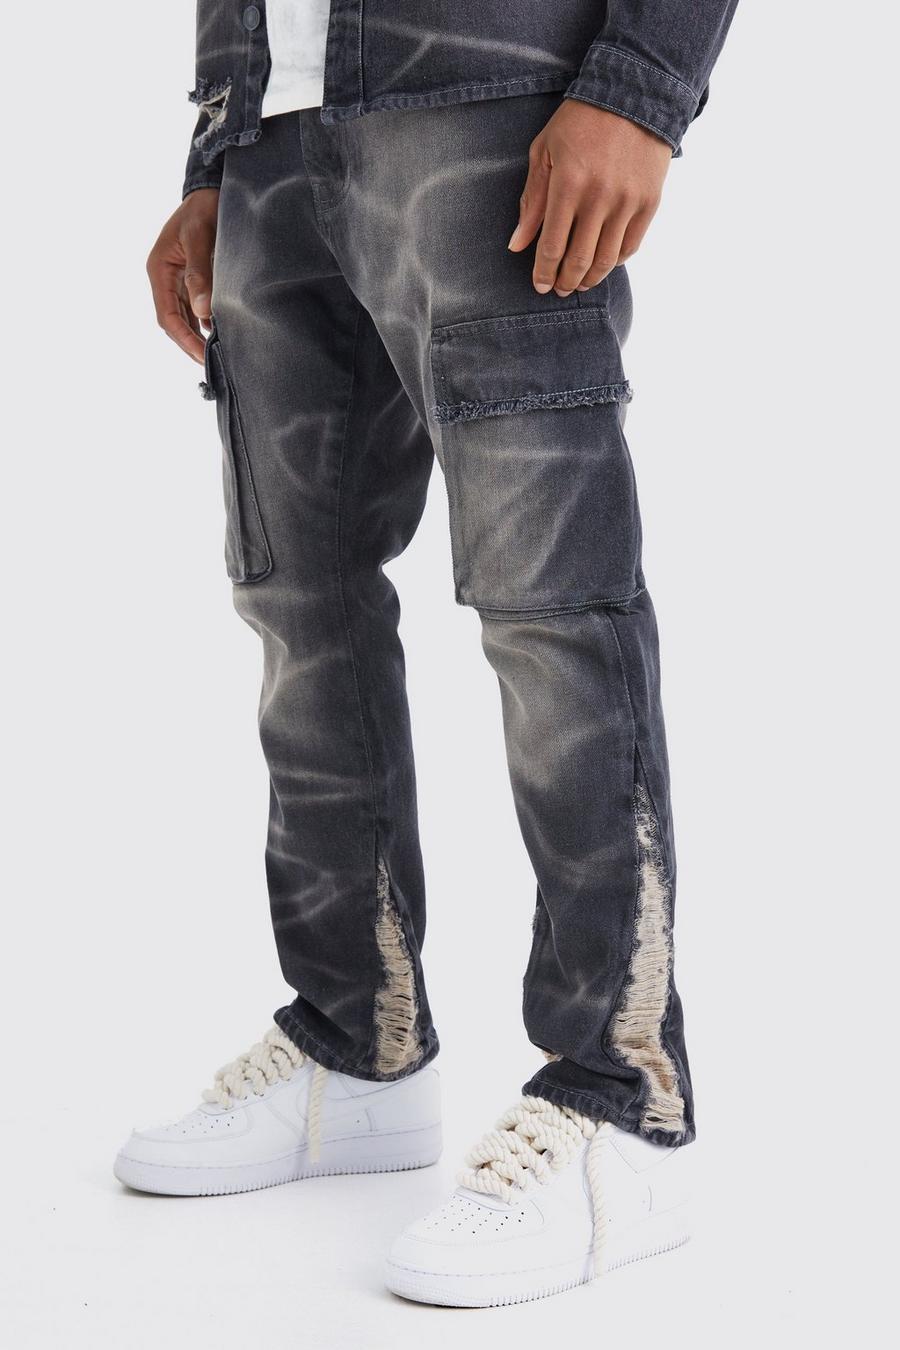 Jeans Cargo Slim Fit in denim rigido sovratinti a effetto consumato, Black